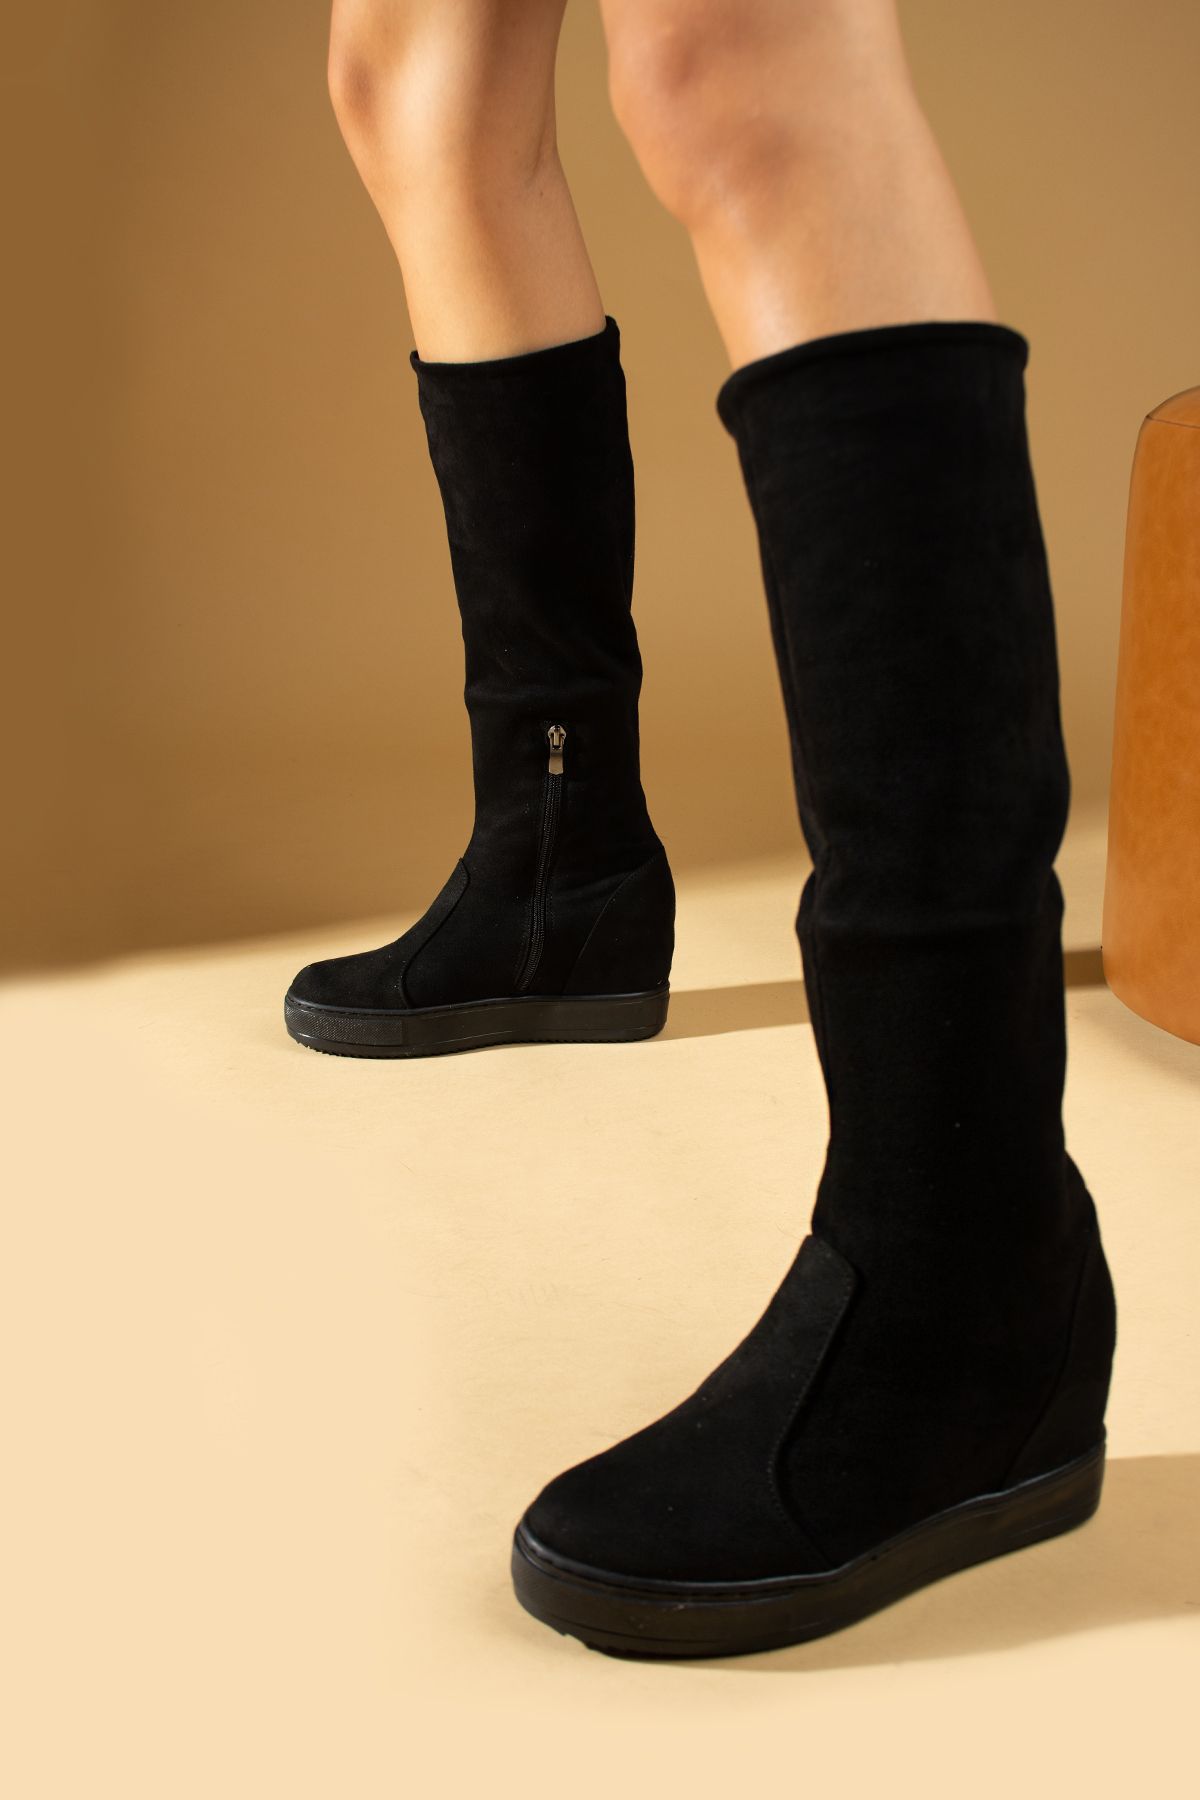 Pembe Potin Siyah Kadın Günlük Rahat Kalıp Diz Altı Süet Streç Çorap Gizli Topuk Çizme